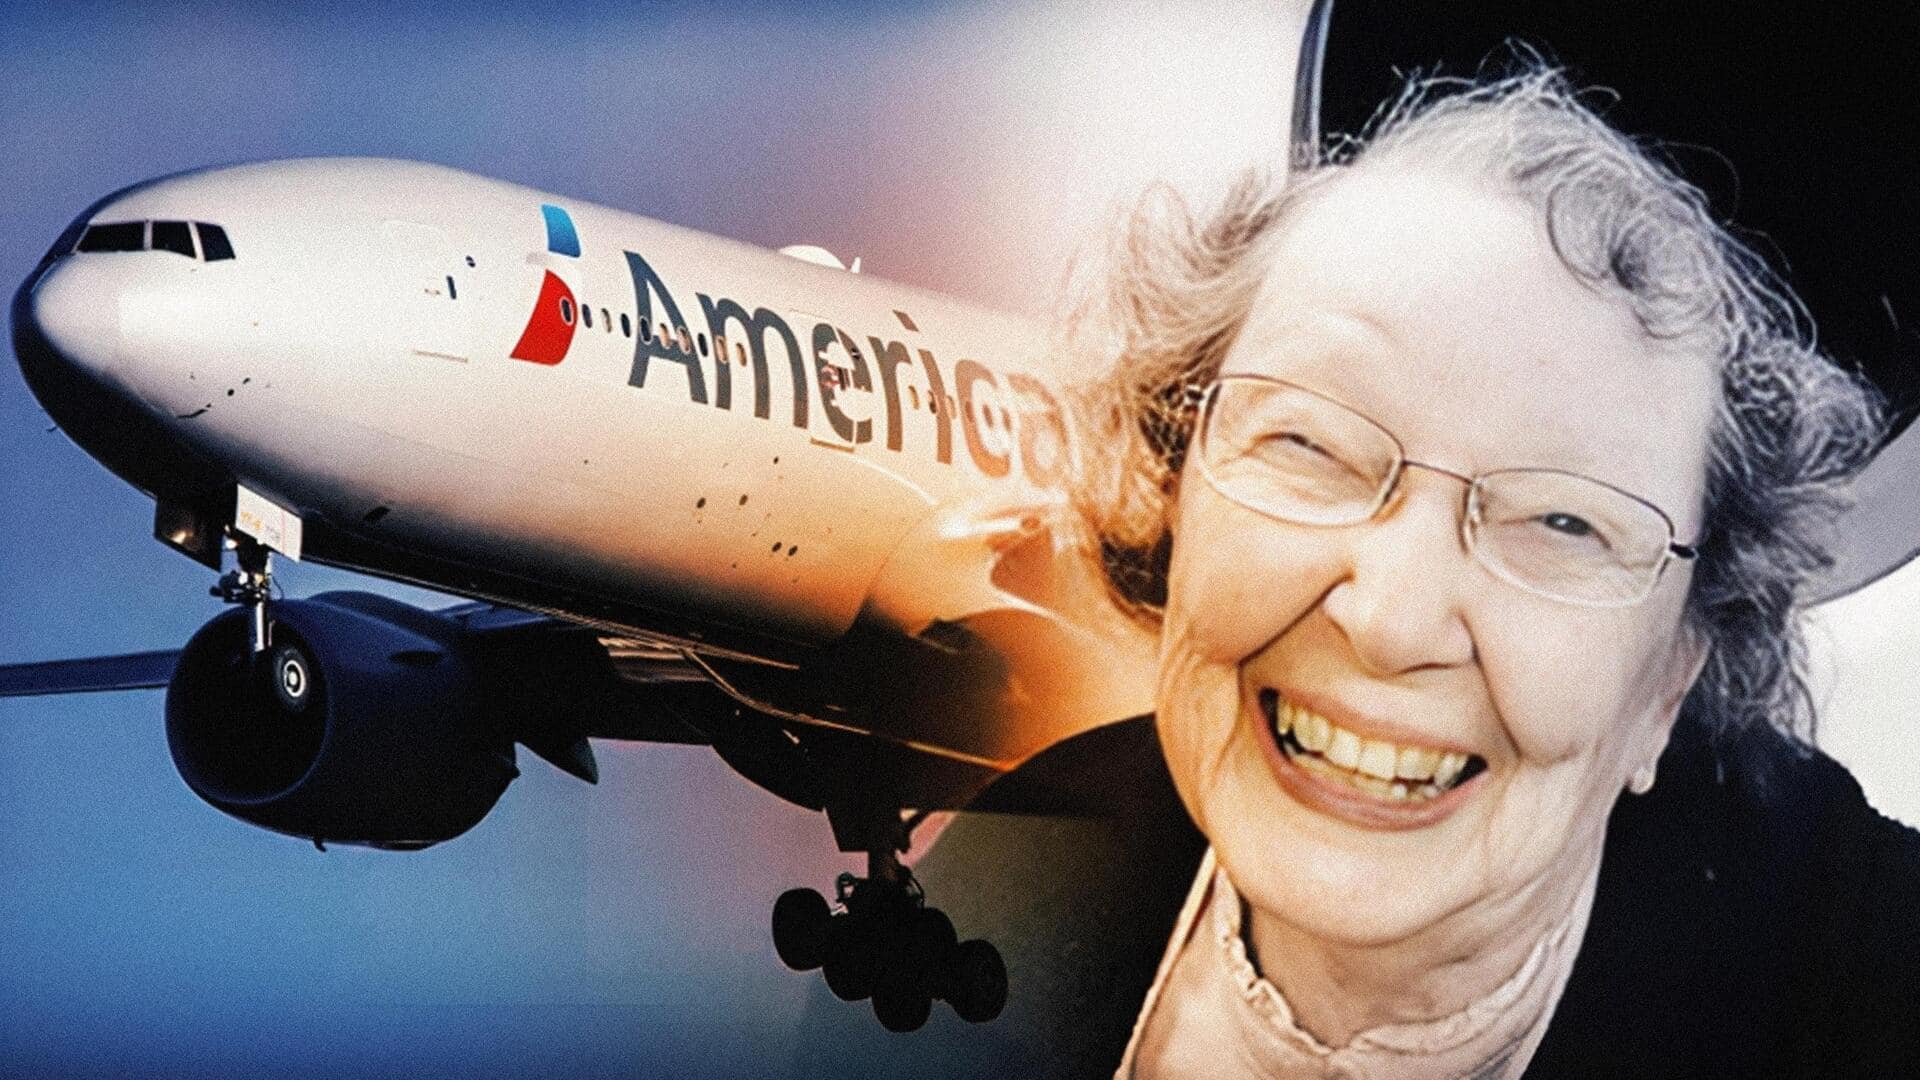 अमेरिका की एयरलाइन 101 साल की महिला को बार-बार समझती रही बच्चा, जानें पूरा मामला